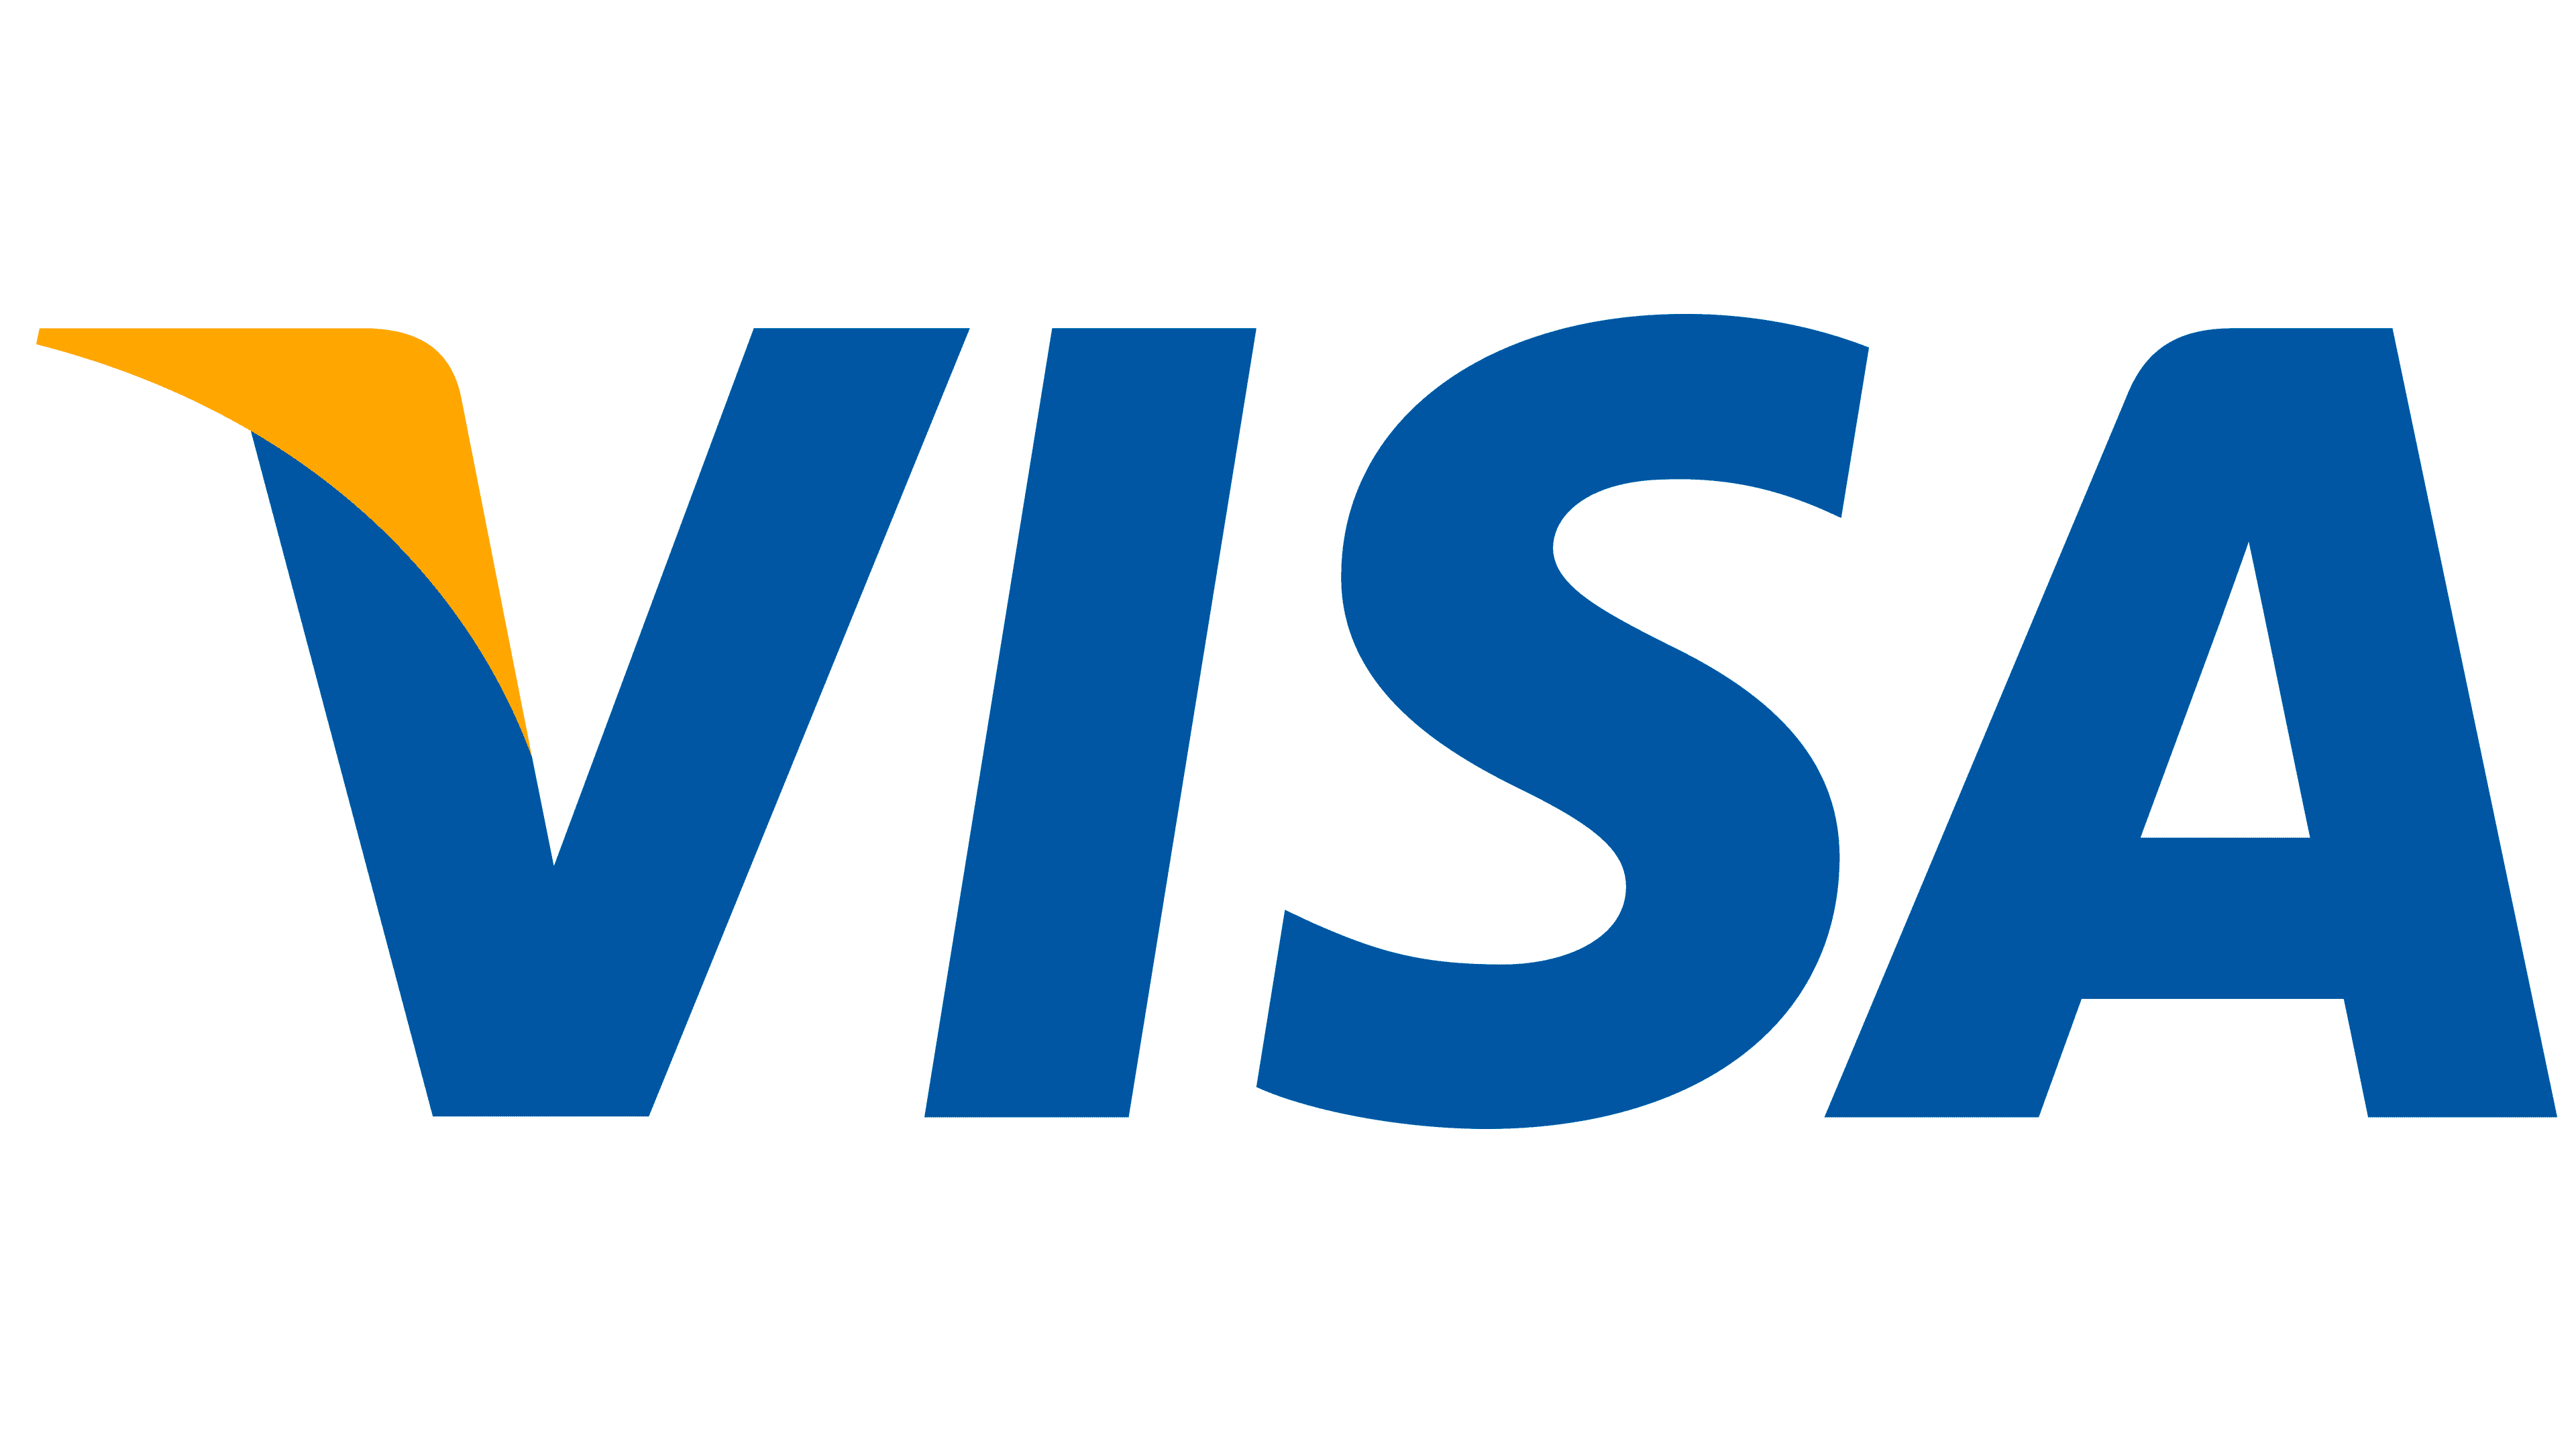 VISA Card Payment